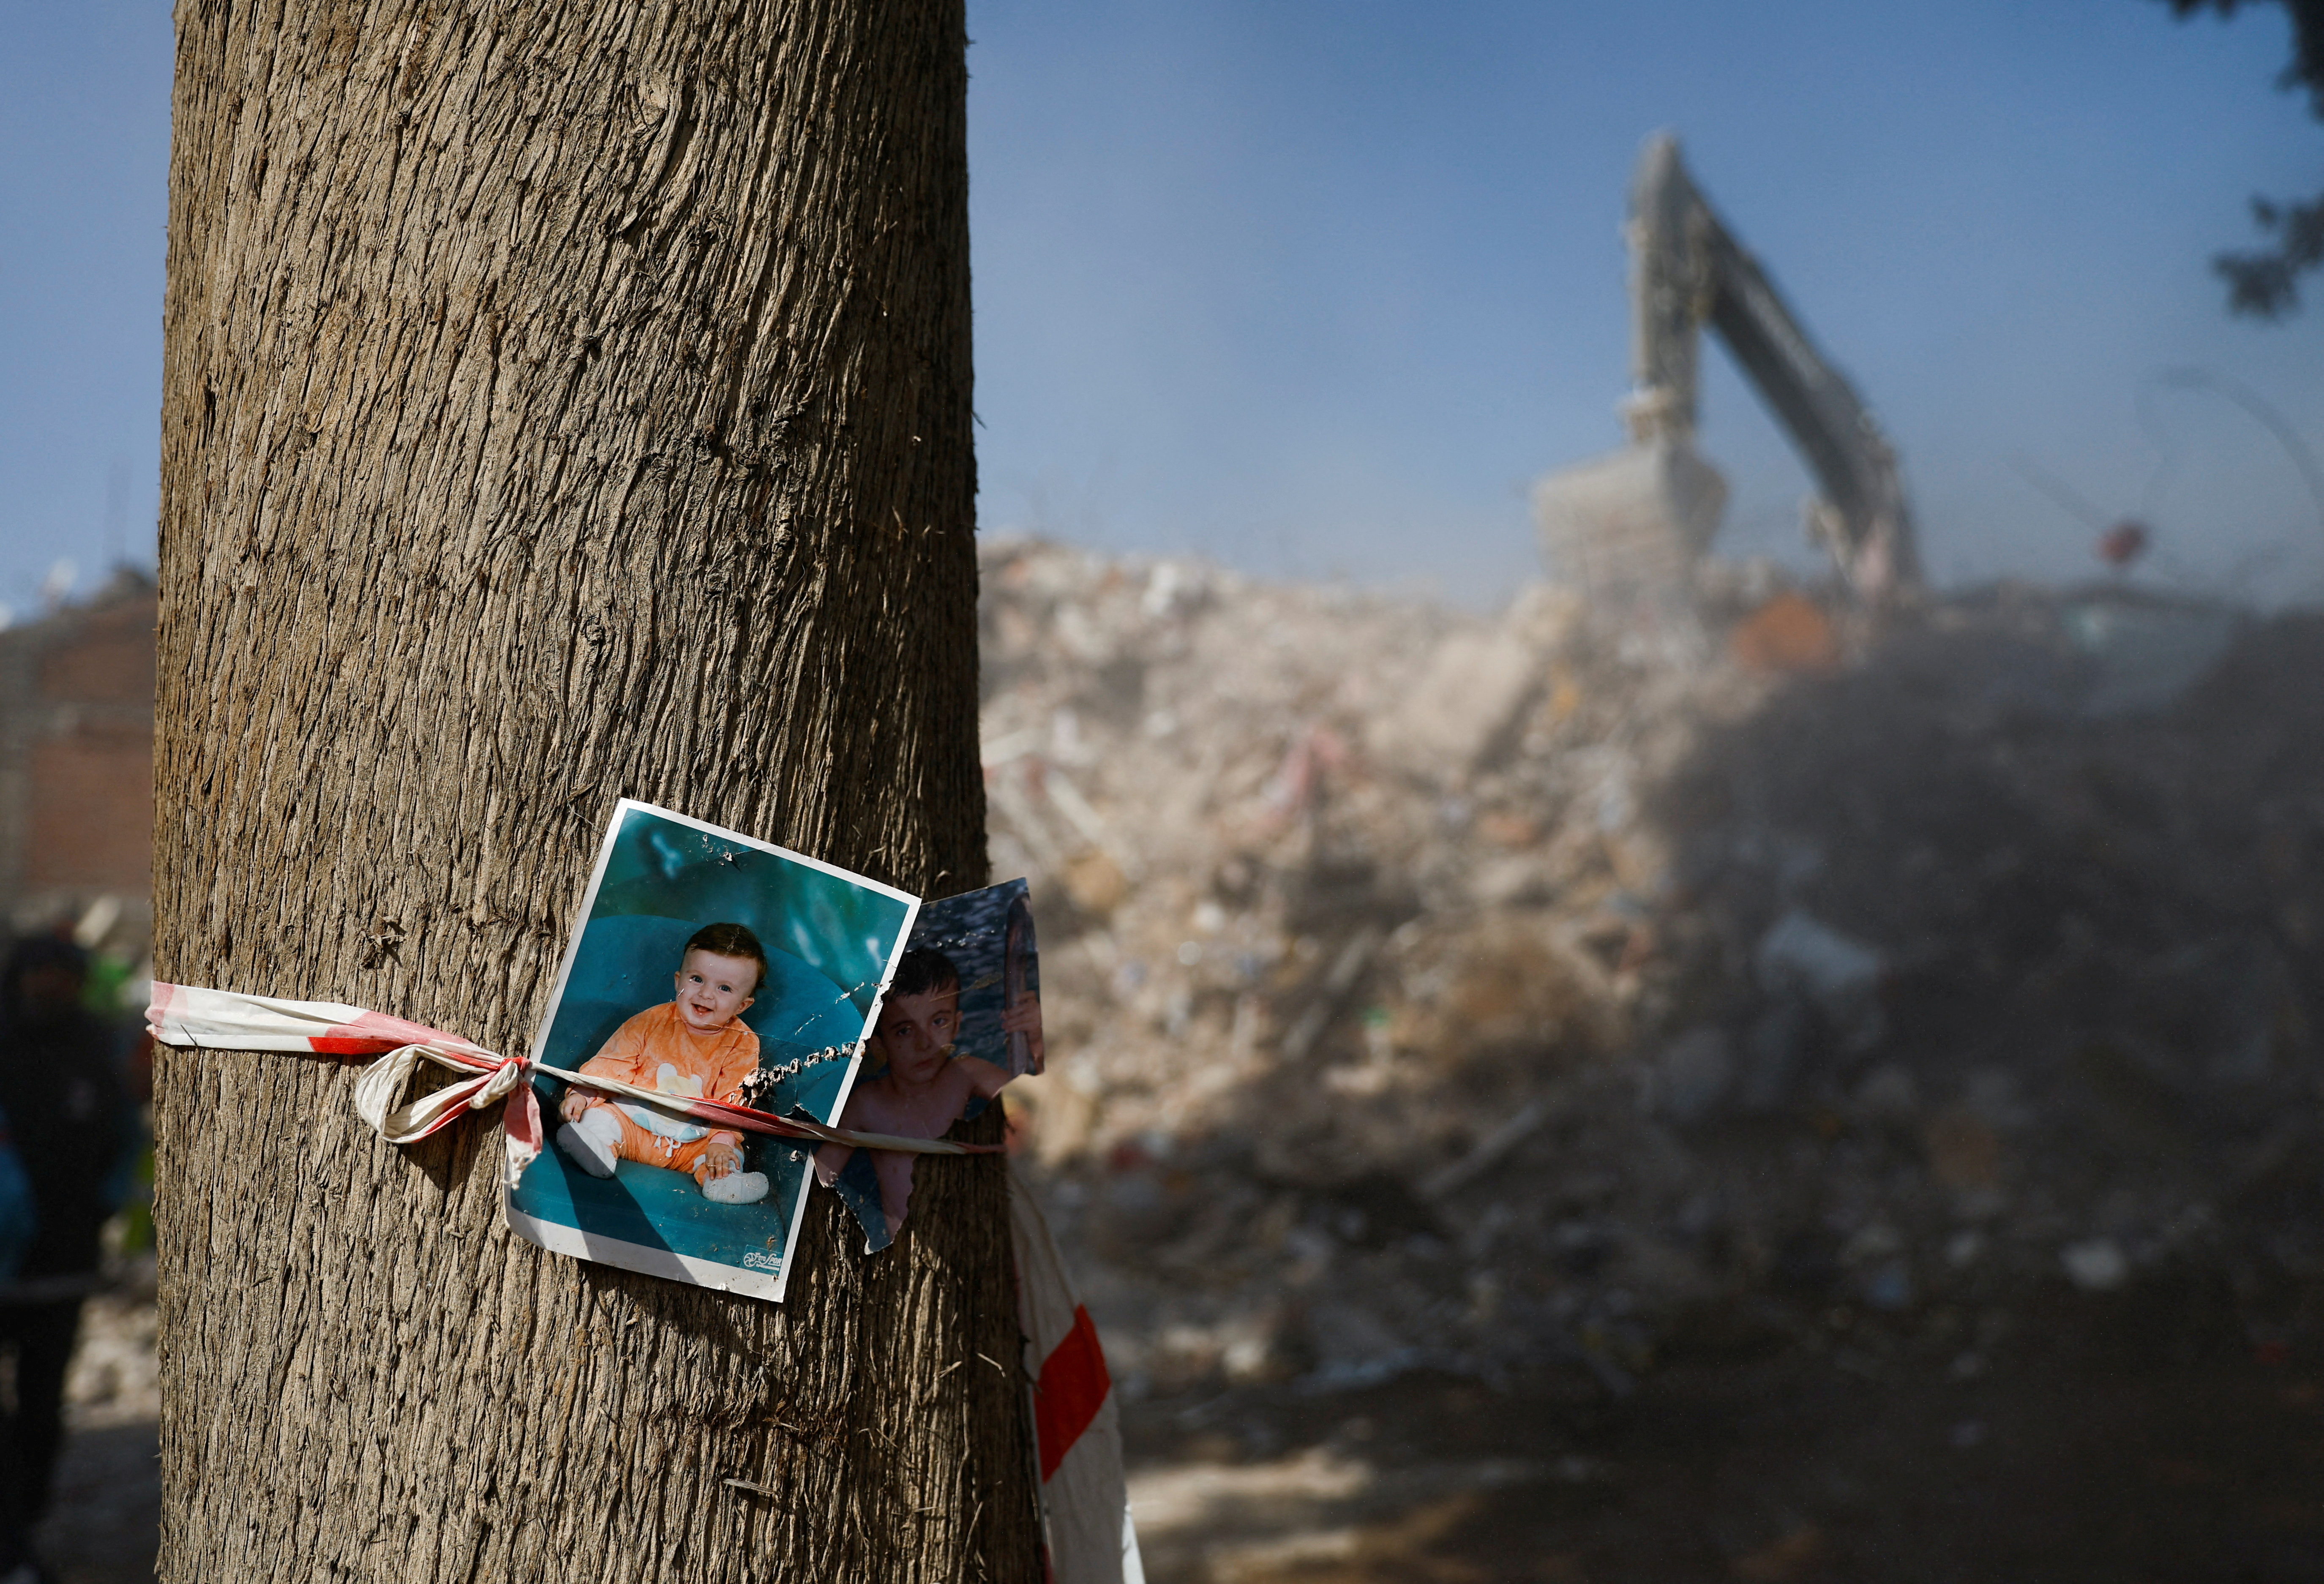 Fotografías de un niño en un árbol cerca de escombros, en las secuelas de un terremoto mortal en Kahramanmaras, Turquía 14 de febrero 2023. REUTERS/Suhaib Salem